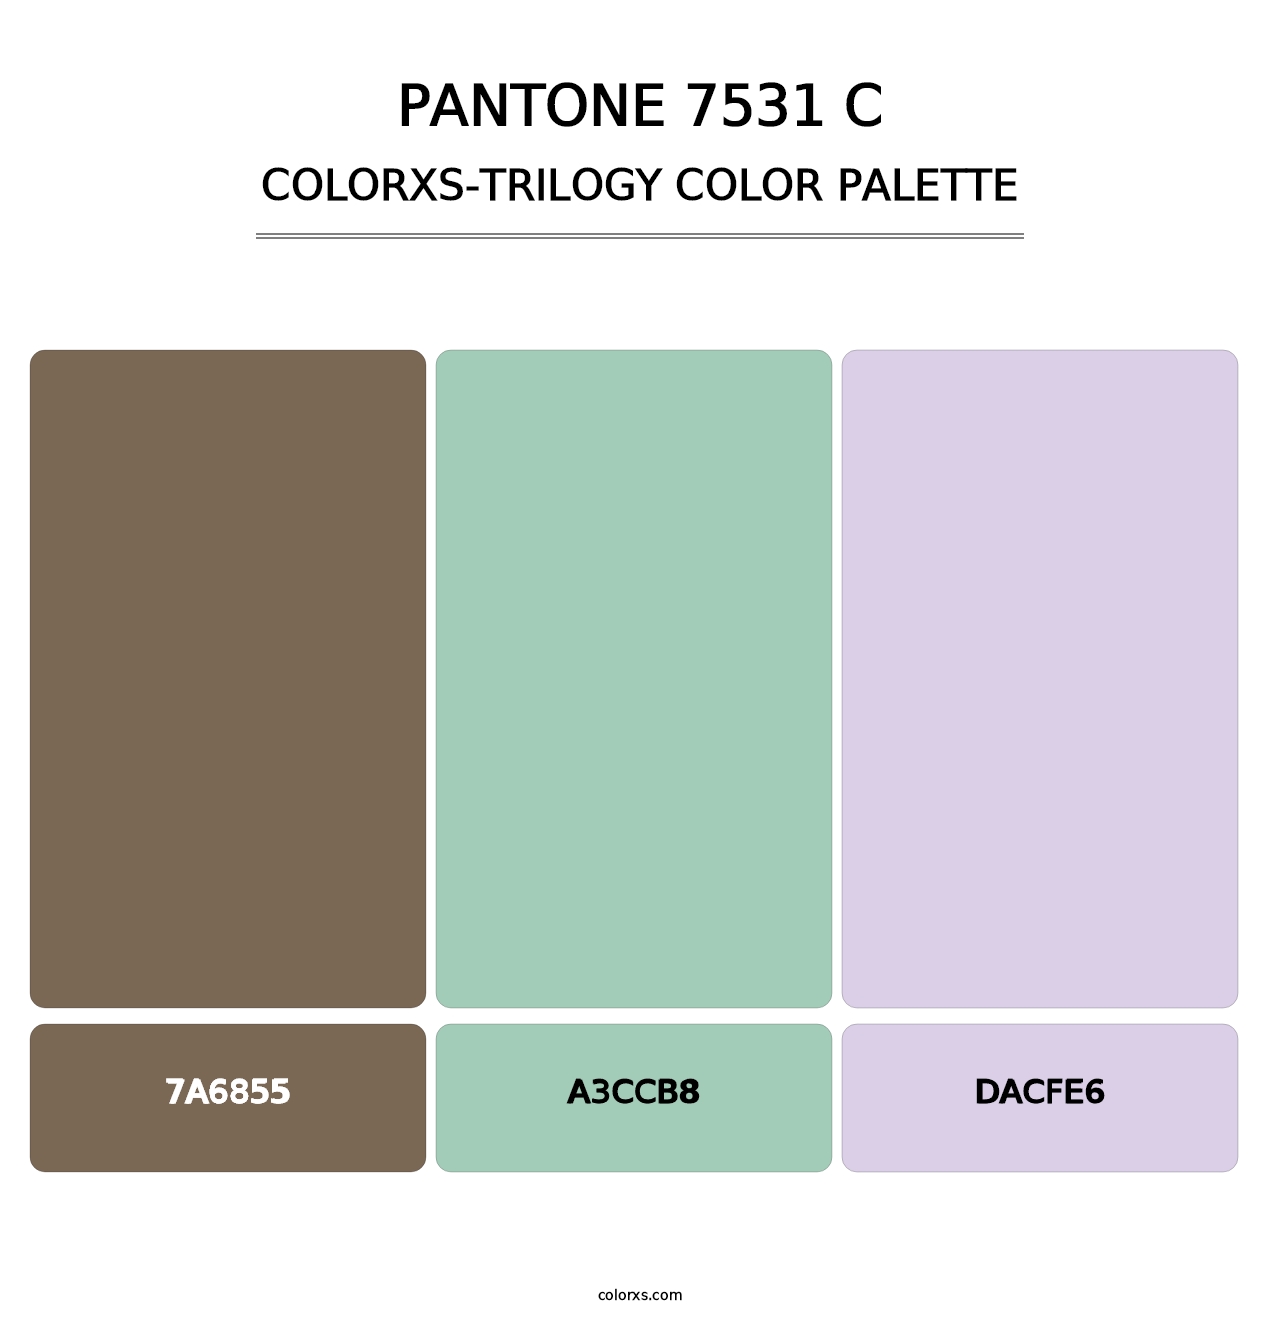 PANTONE 7531 C - Colorxs Trilogy Palette